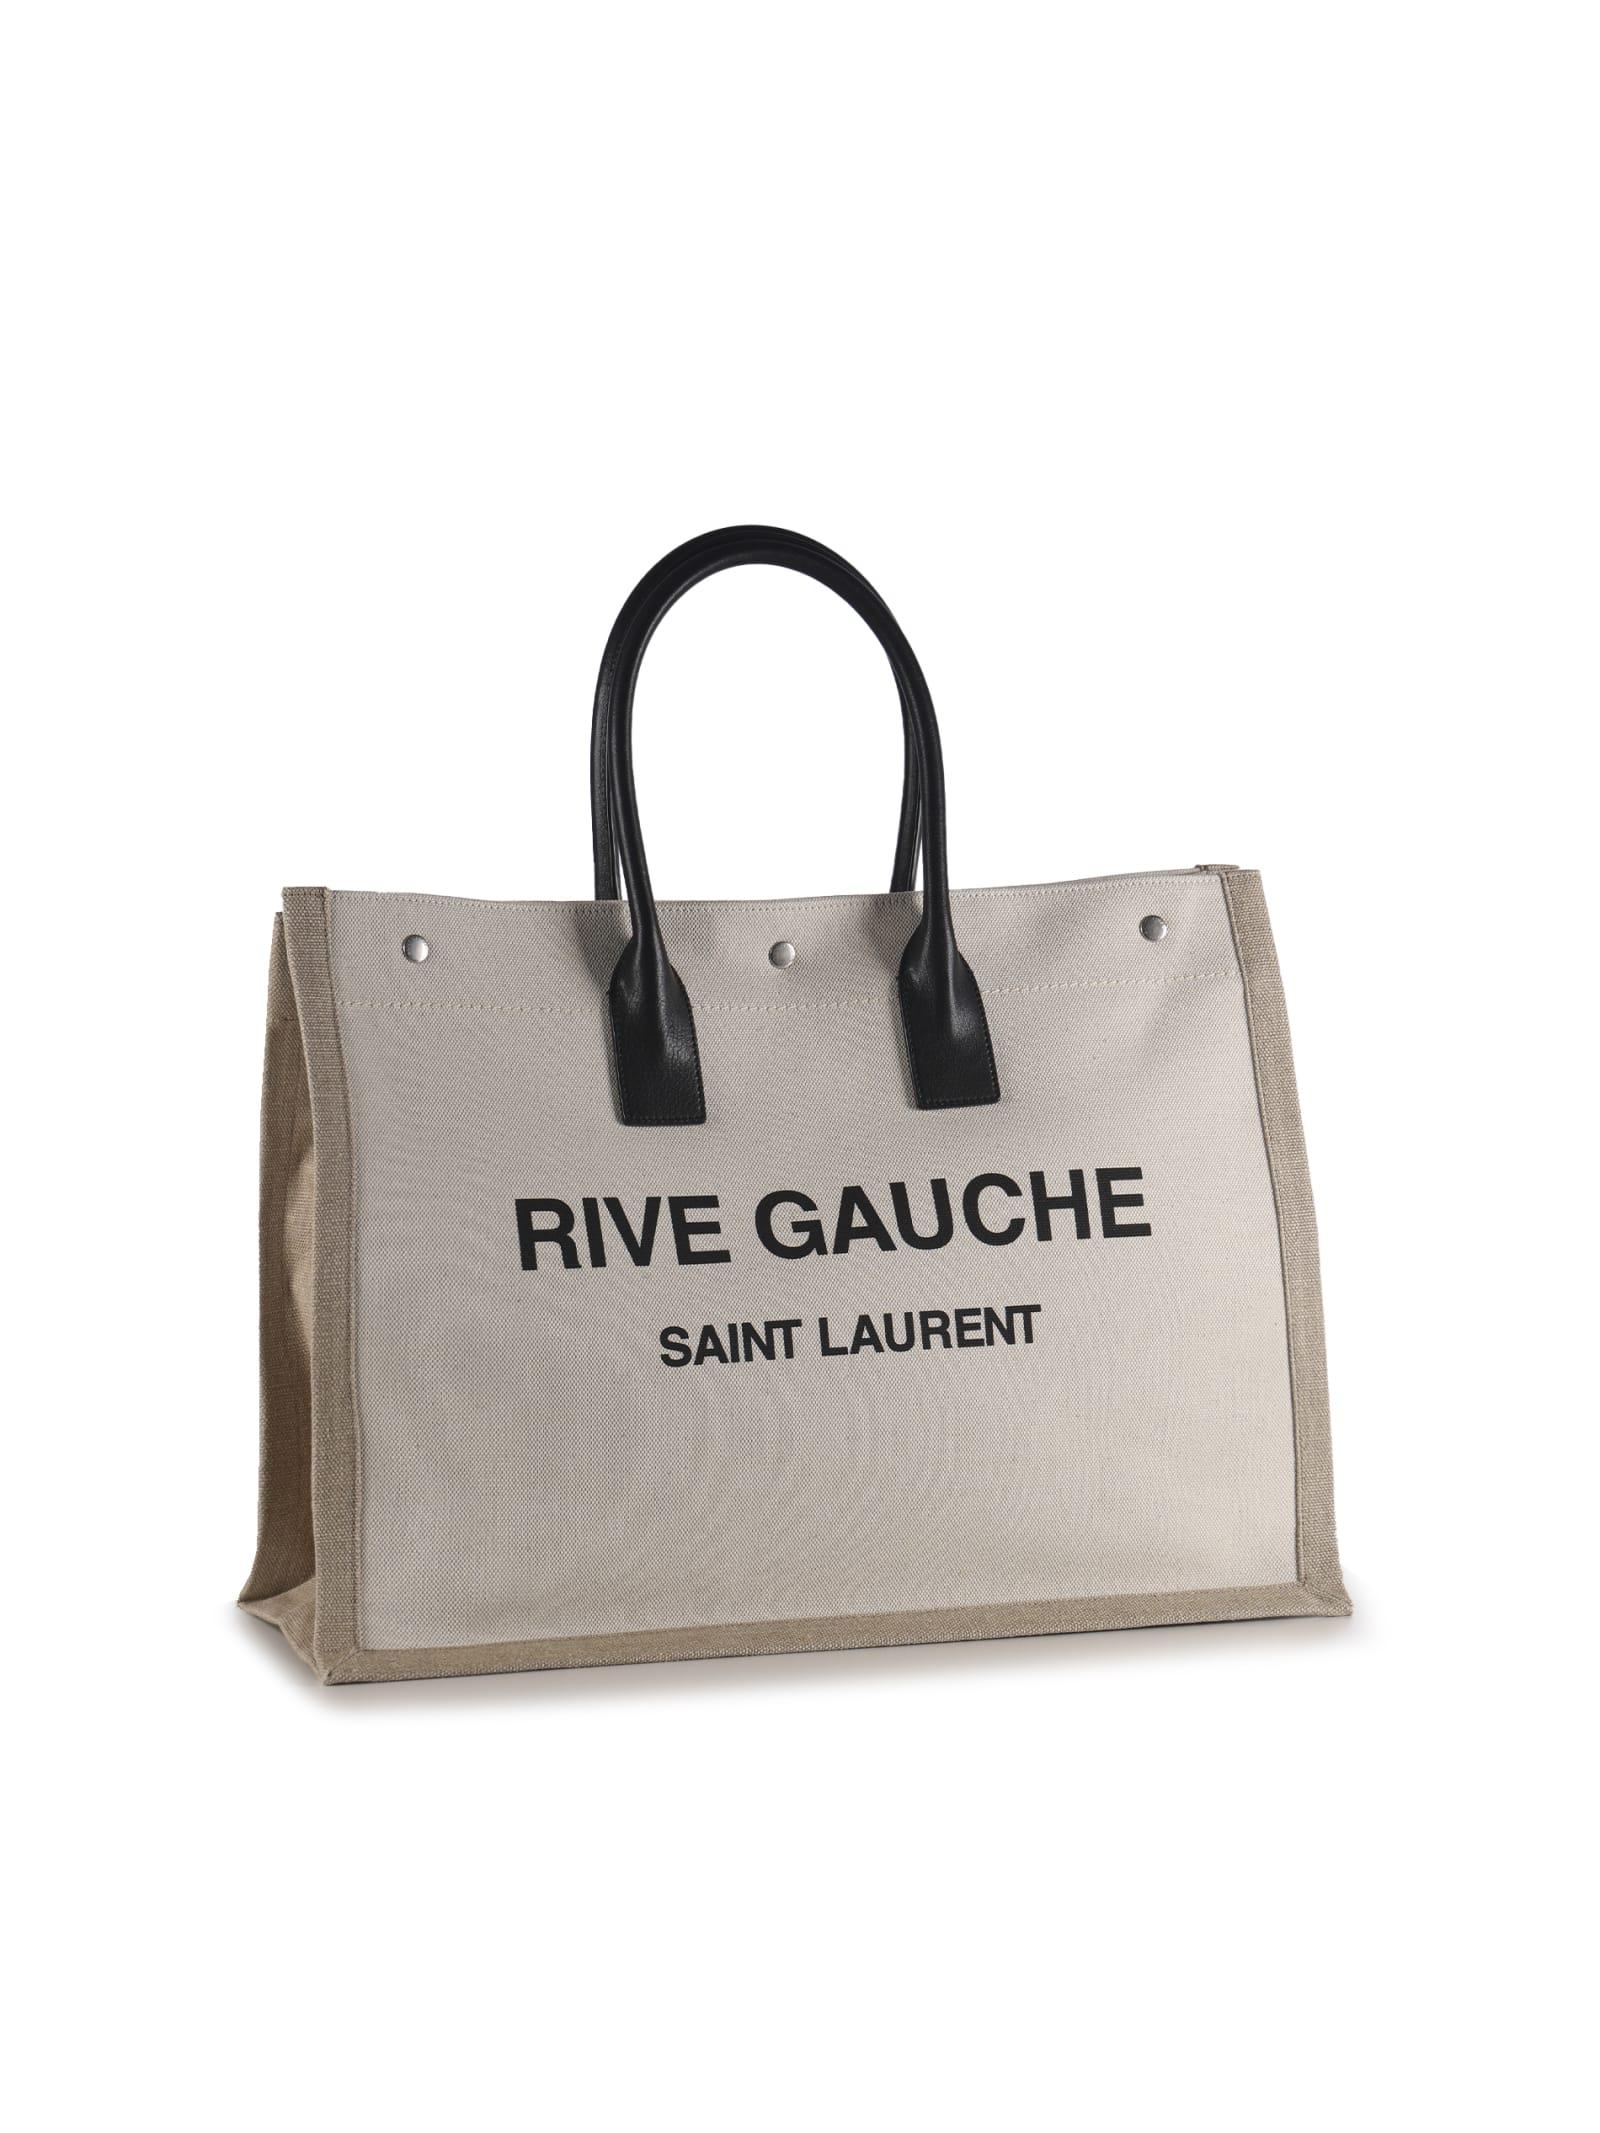 Saint Laurent Large Rive Gauche Shopping Bag for Men | Lyst